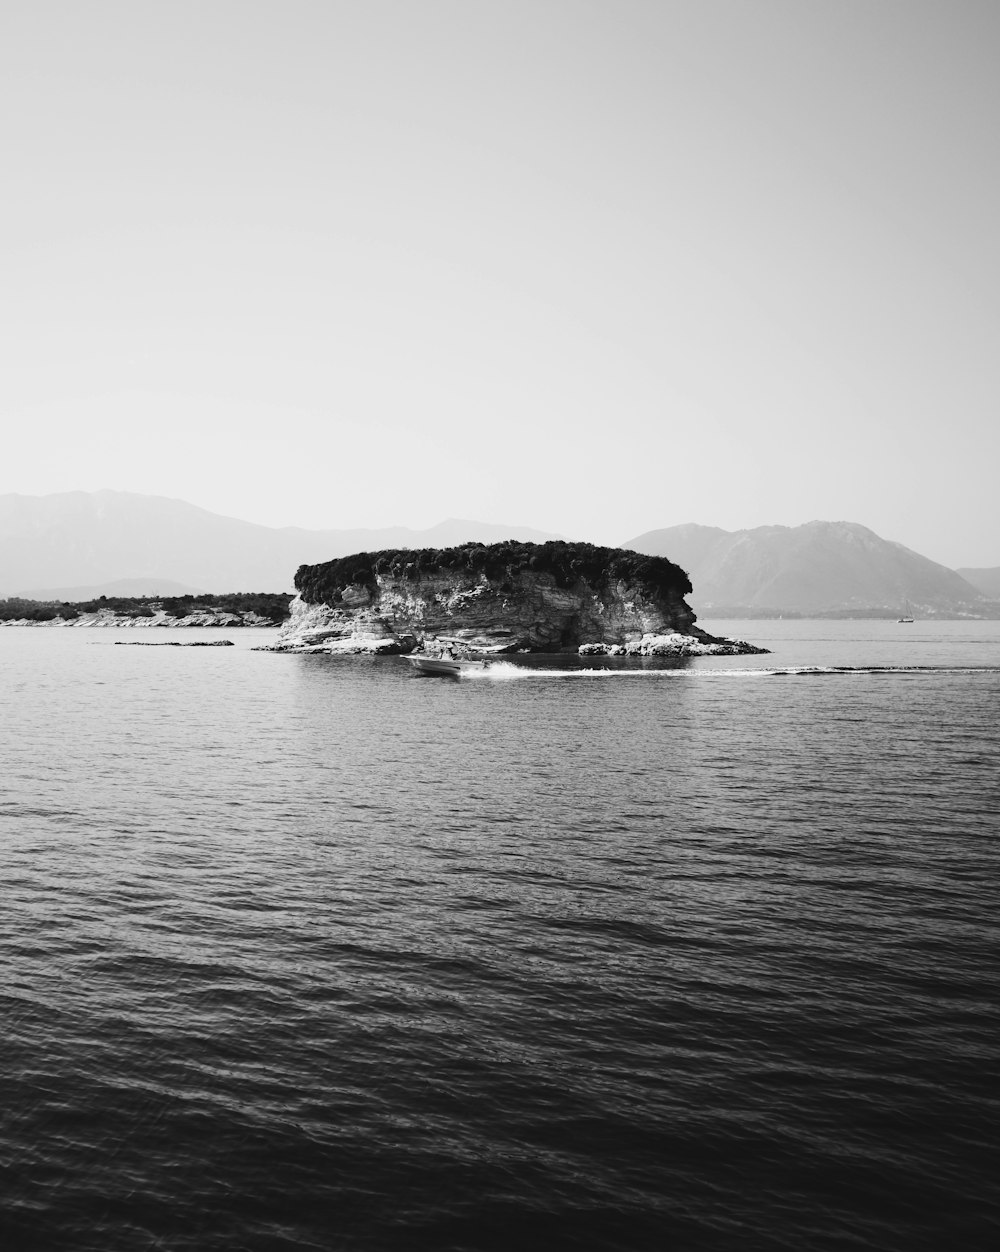 fotografia em tons de cinza do barco perto da ilha durante o dia